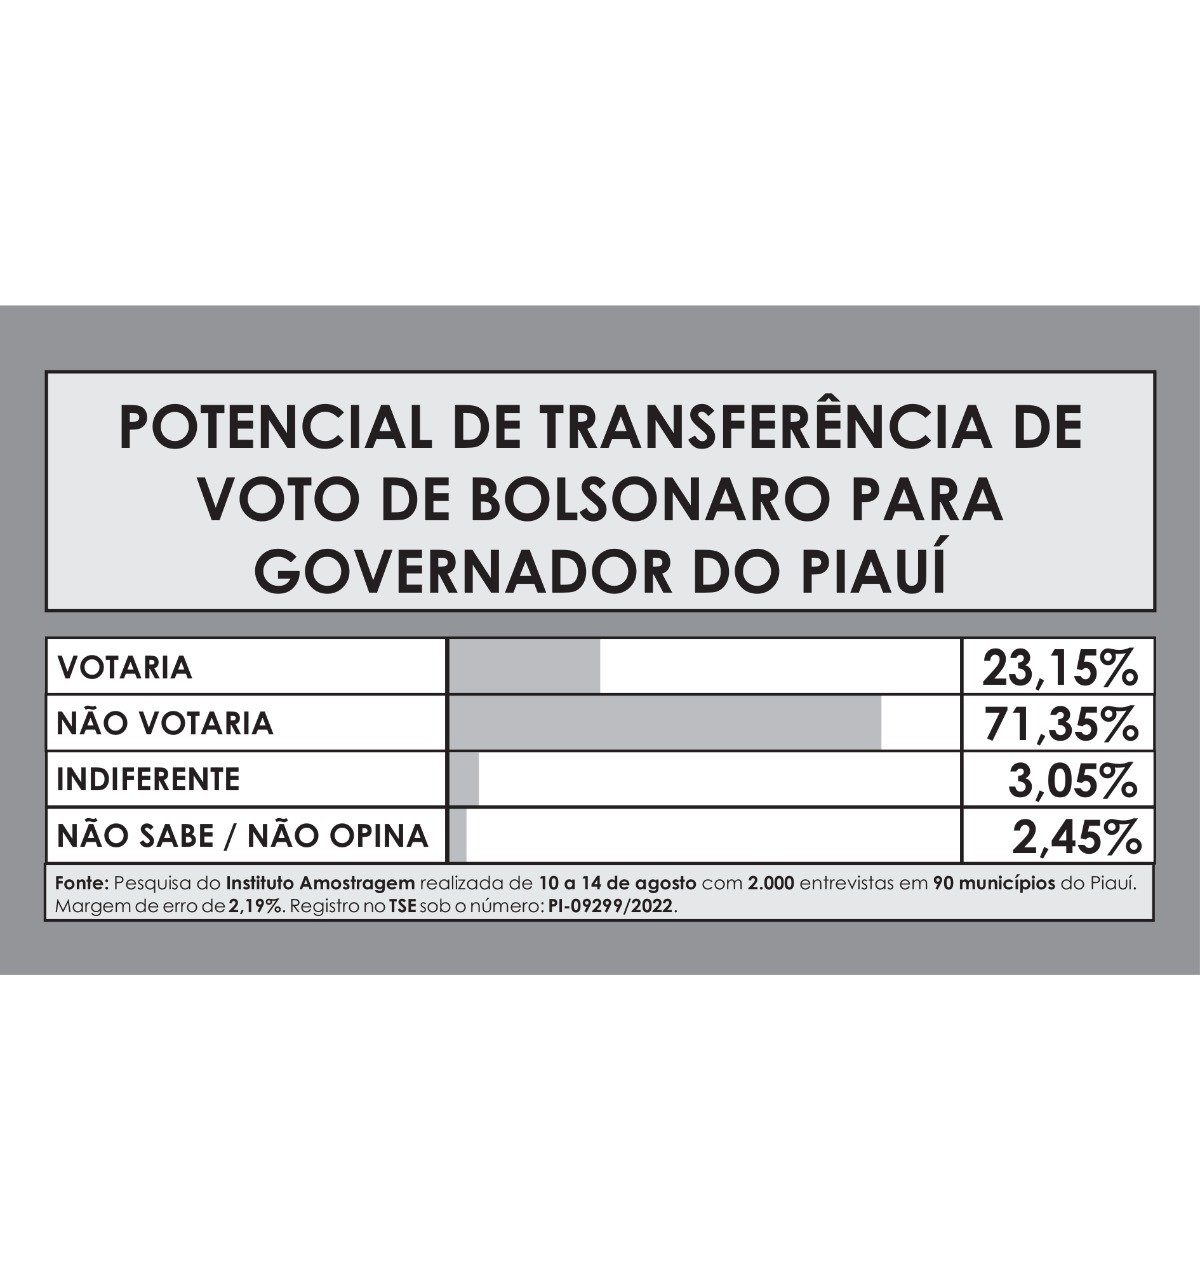 Potencial de transferência de voto de Bolsonaro para o governo do Piauí (Foto: Divulgação)